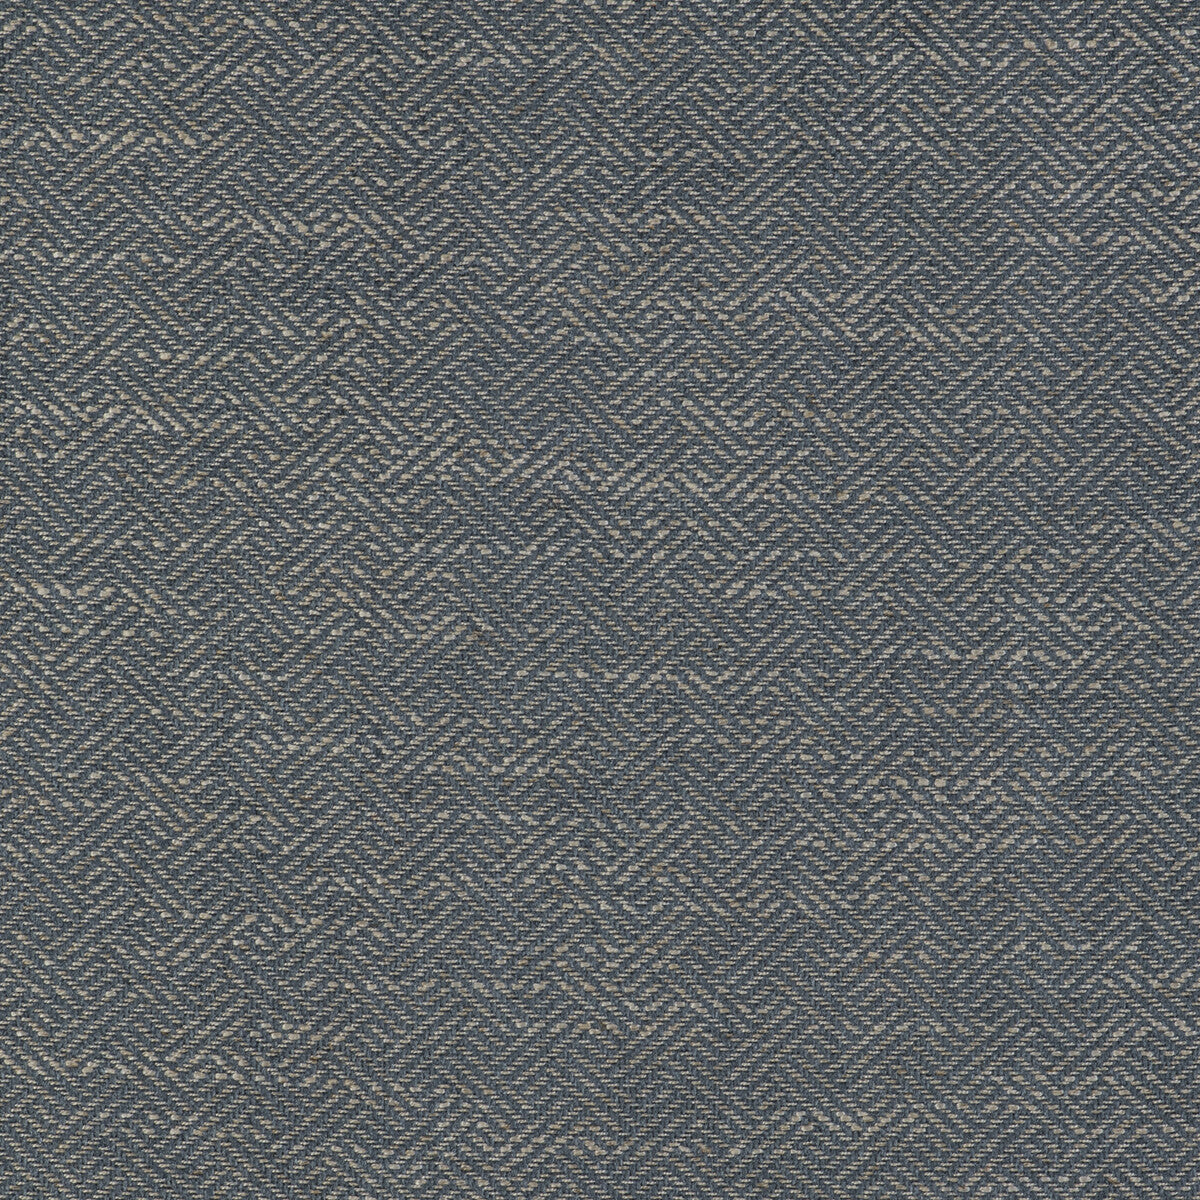 Enea fabric in azul cielo color - pattern GDT5518.009.0 - by Gaston y Daniela in the Gaston Libreria collection